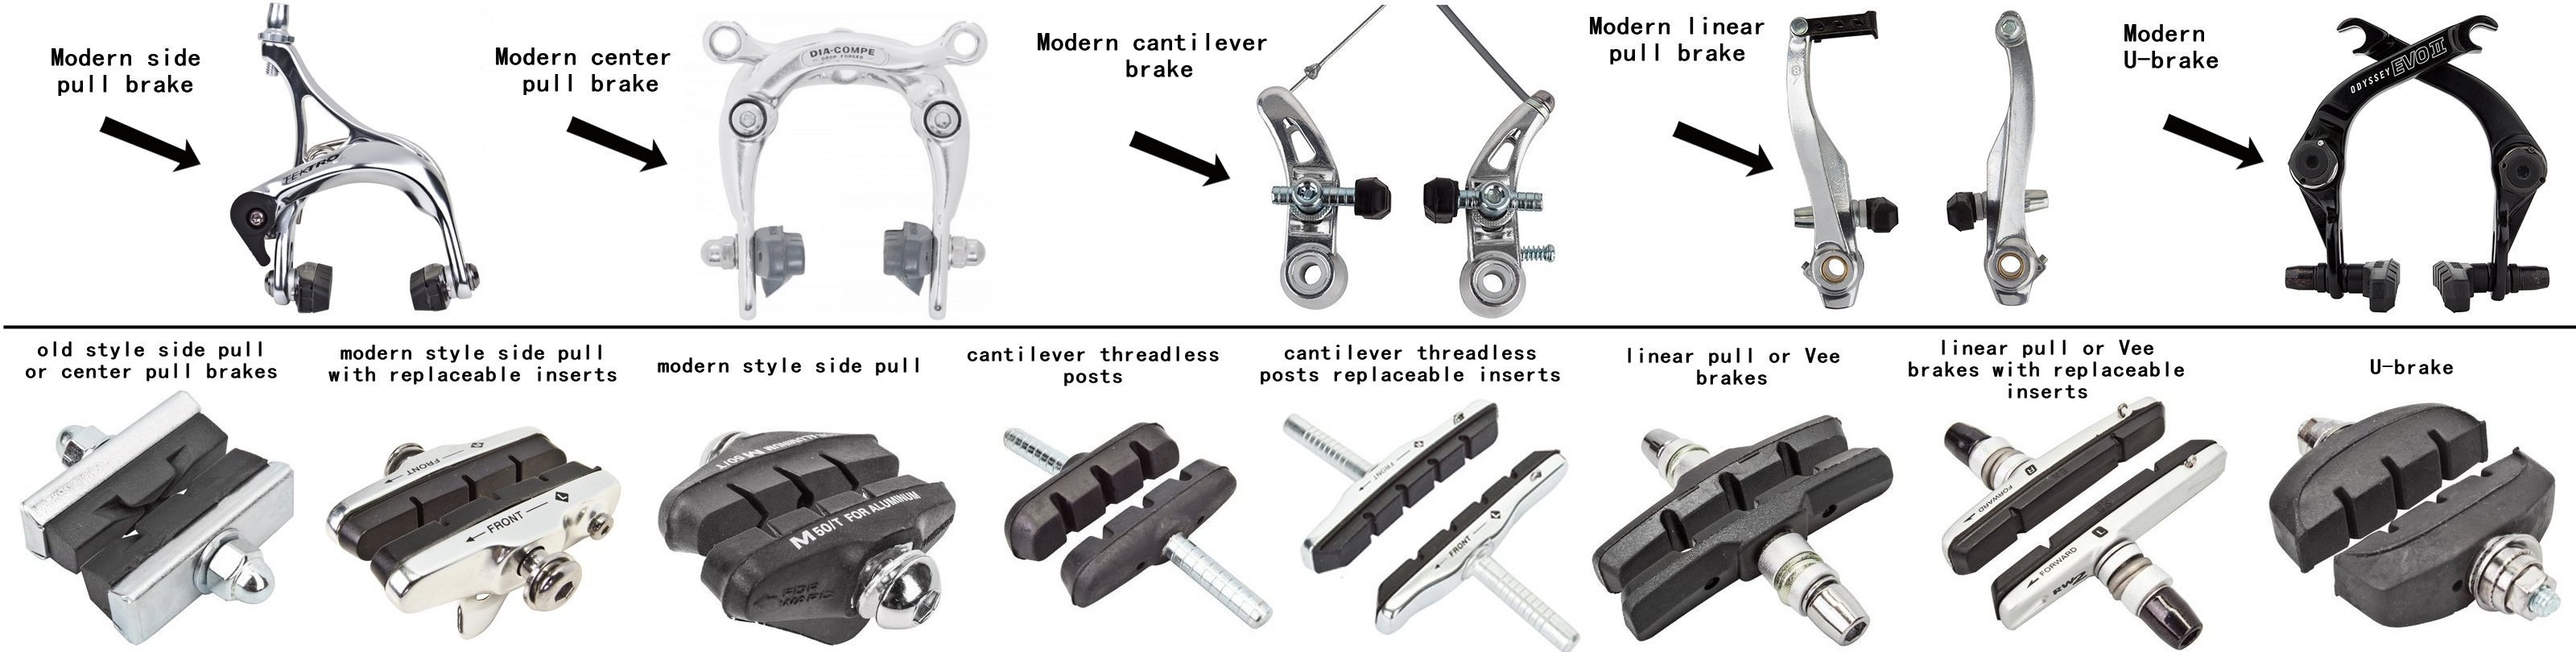 types of mountain bike brakes